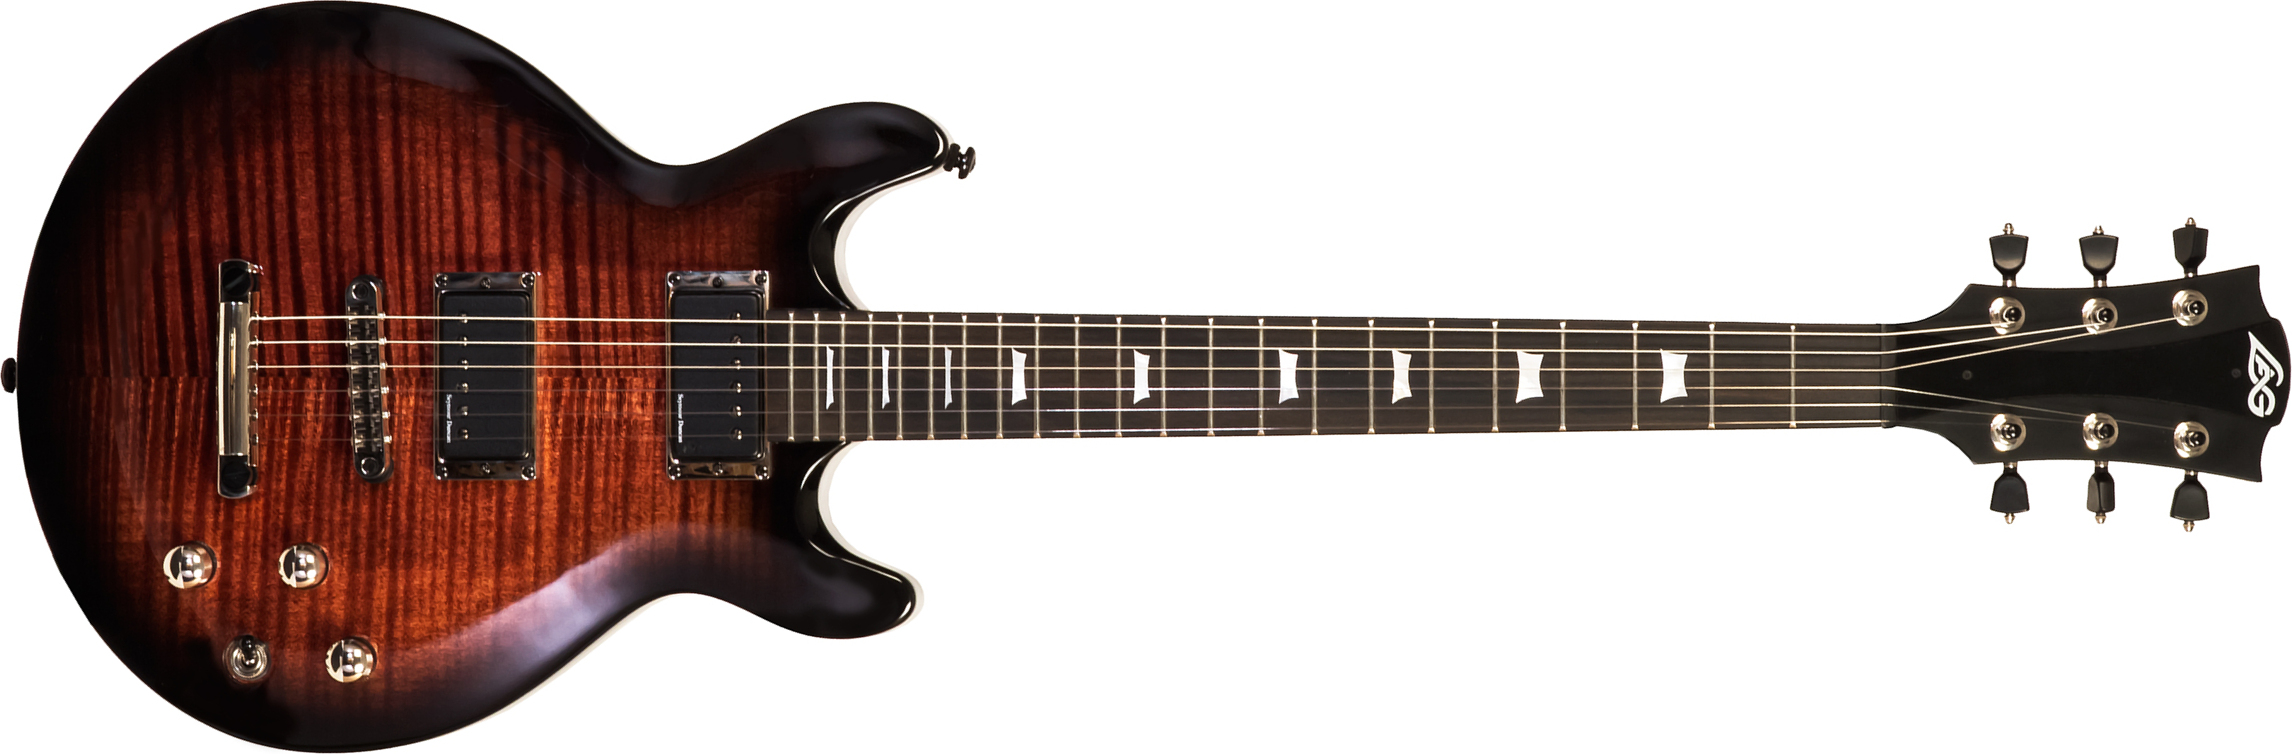 Lag Roxane R500 2h Seymour Duncan Ht Bw - Black Shadow - Guitarra eléctrica de doble corte - Main picture